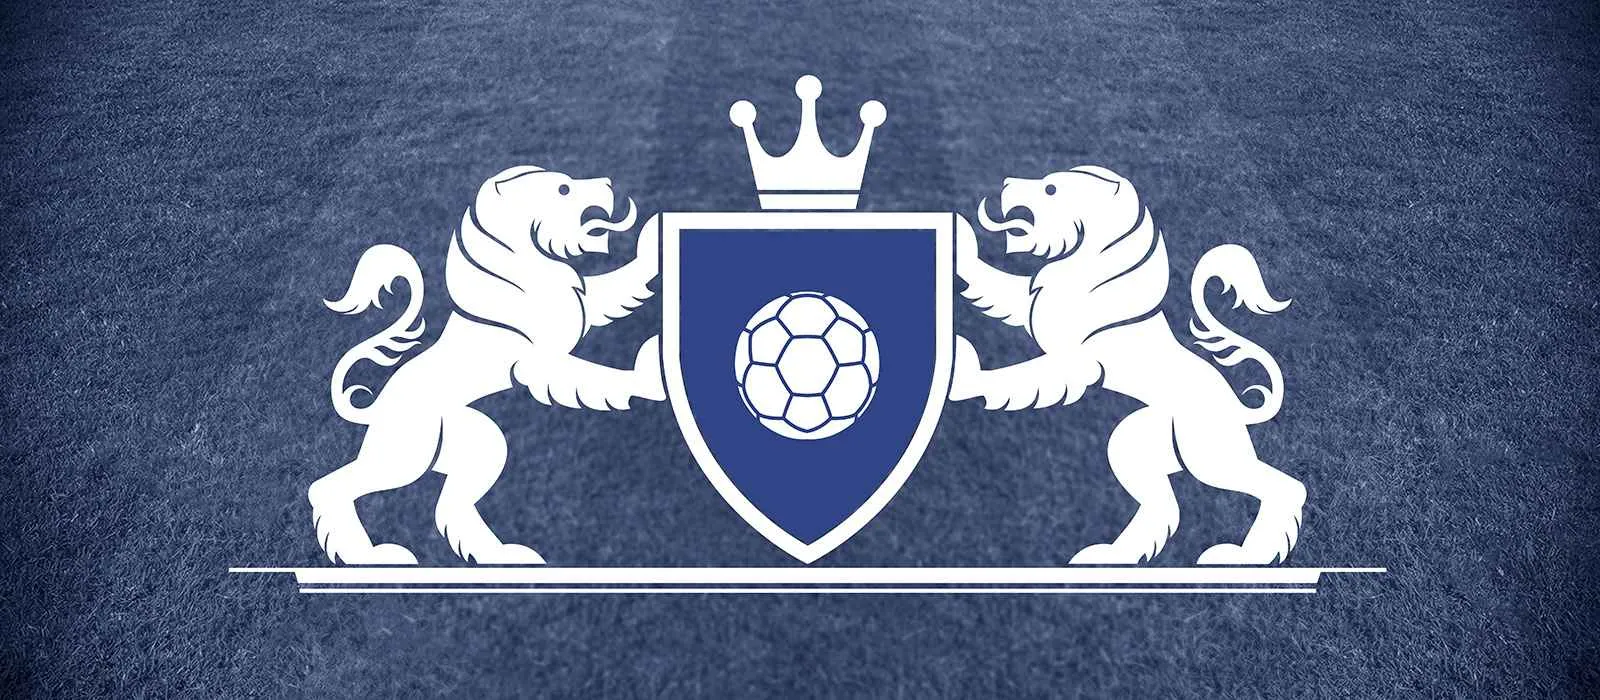 Logga med färger som representerar Premier League-fotbollslaget Everton